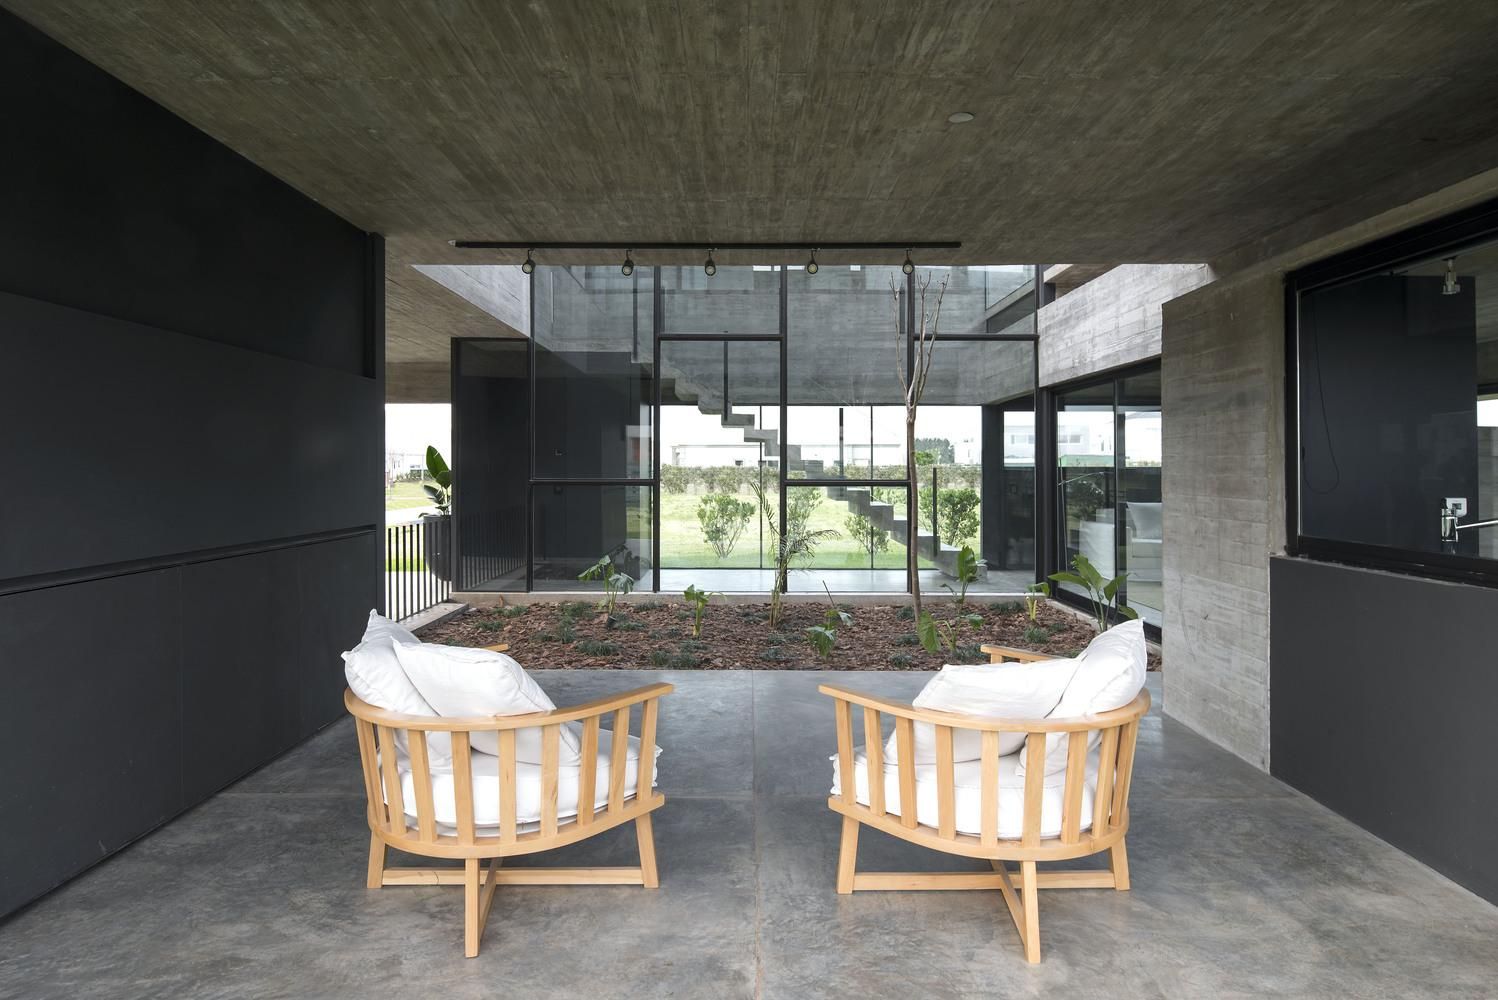 Величие бетона и клумба посреди комнаты: интересный проект частного дома из Аргентины